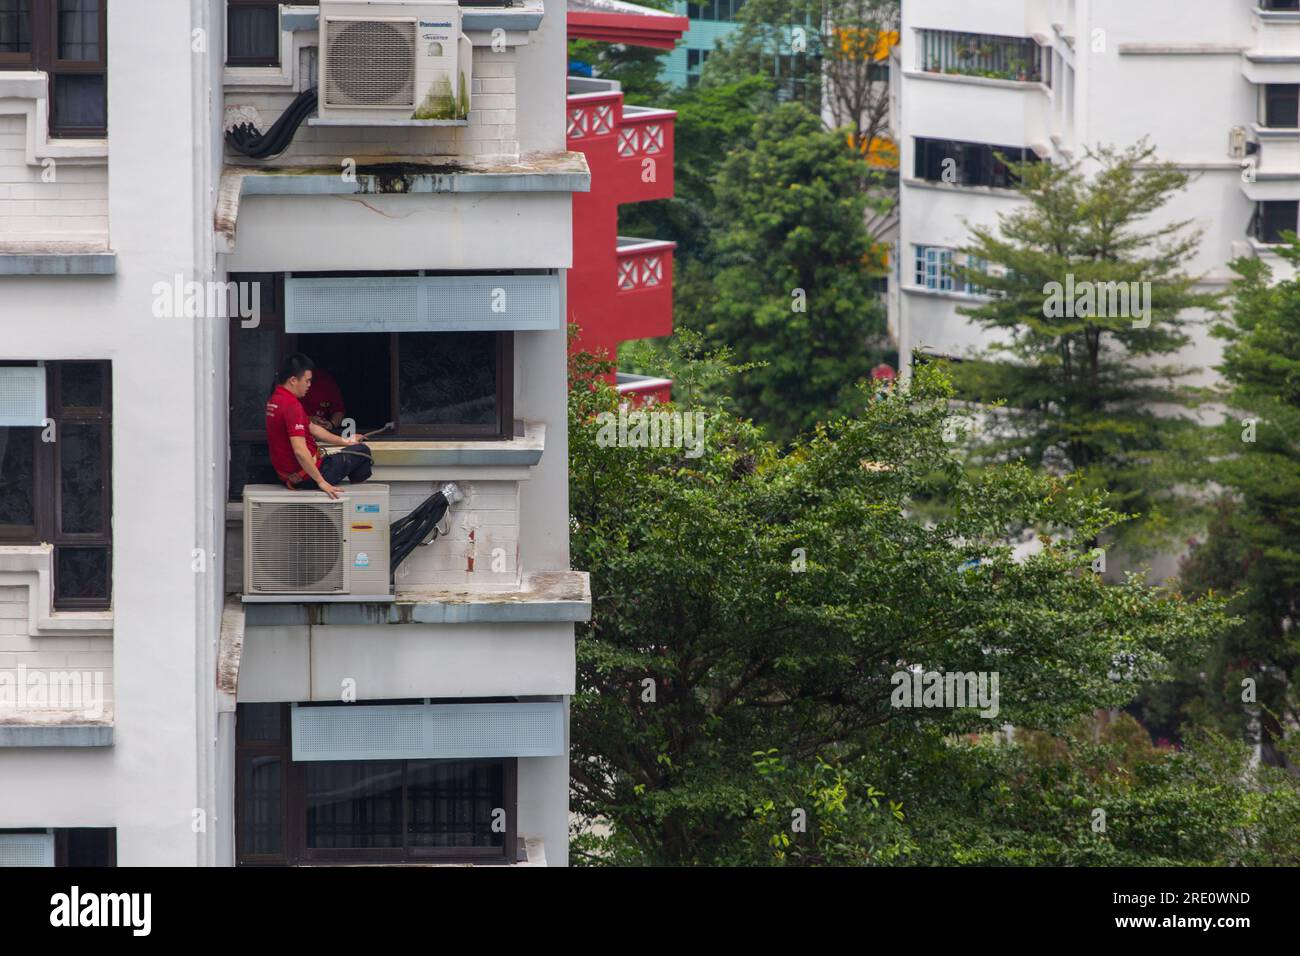 Un tecnico è seduto sull'unità aria condizionata in un edificio alto che esegue riparazioni a/C e dispone di imbracature di sicurezza per evitare cadute dall'alto. Foto Stock